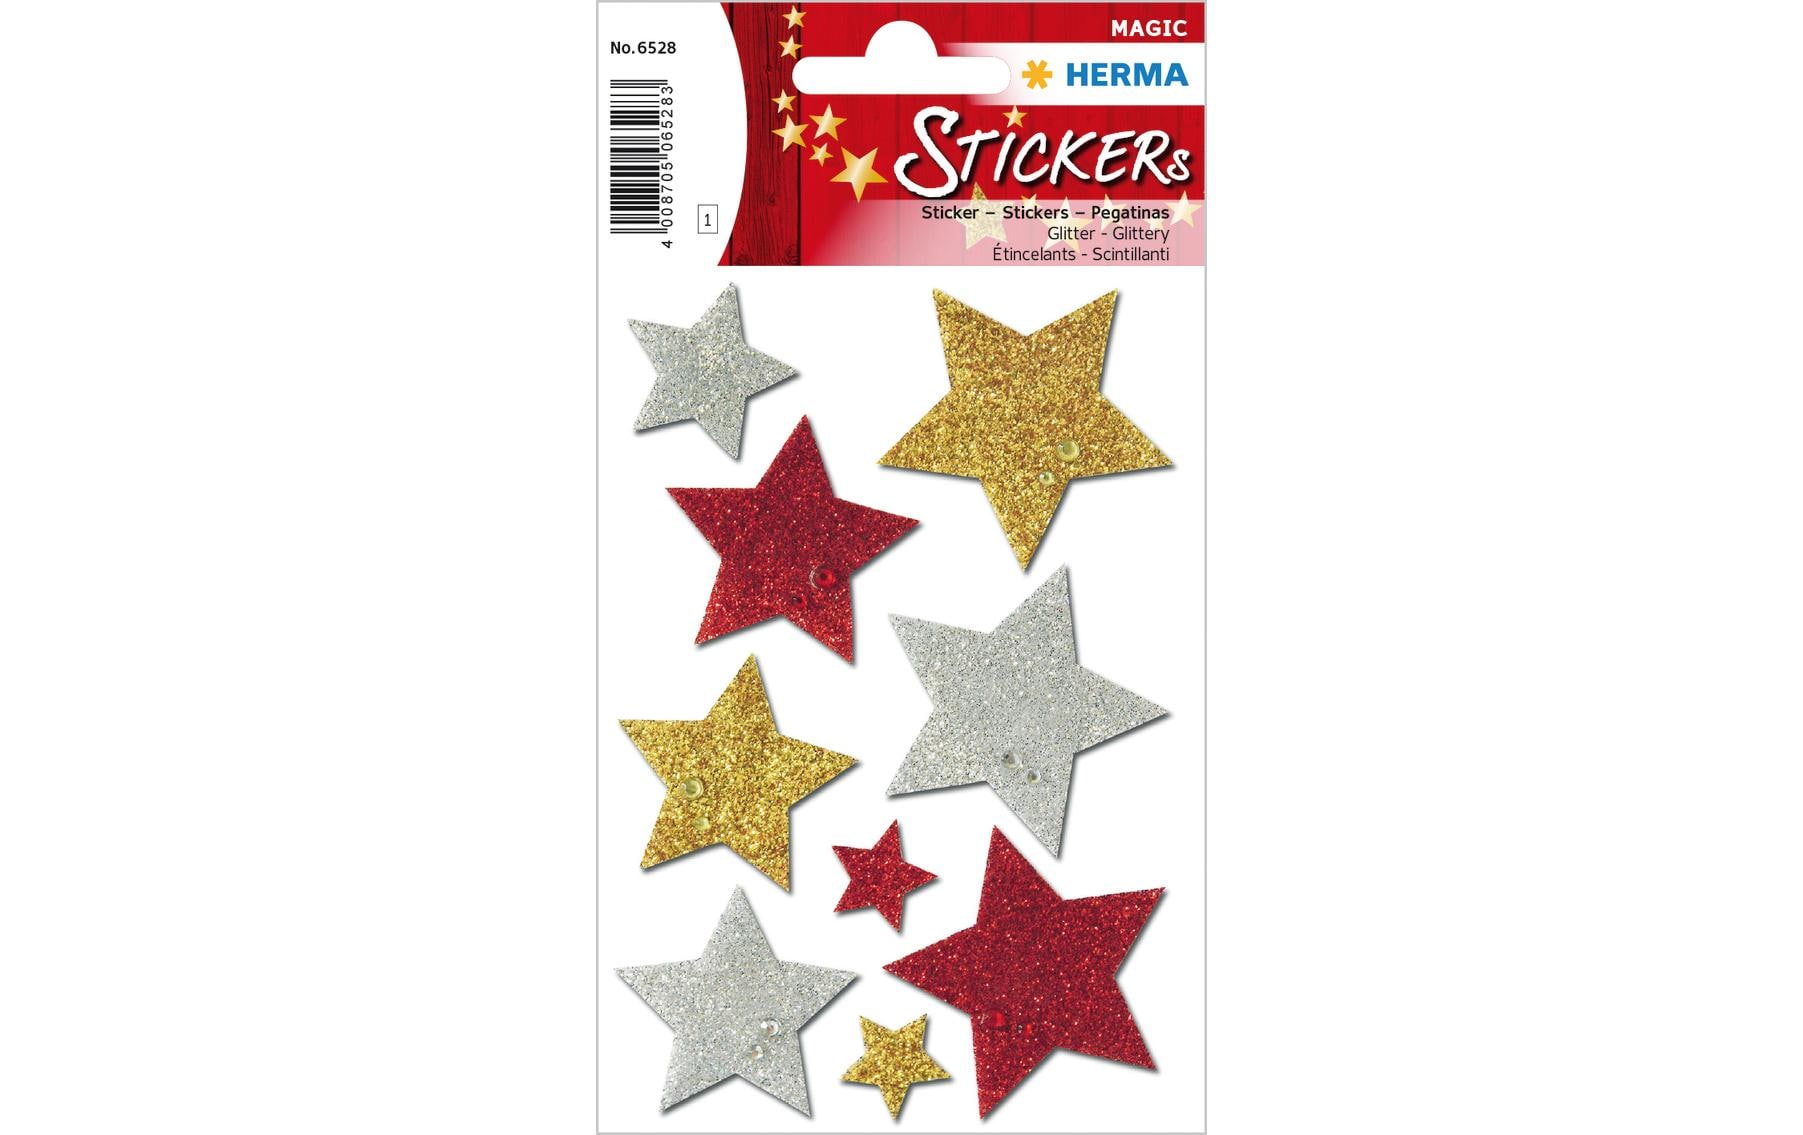 Herma Stickers Weihnachtssticker Sterne 1 Blatt à 9 Sticker